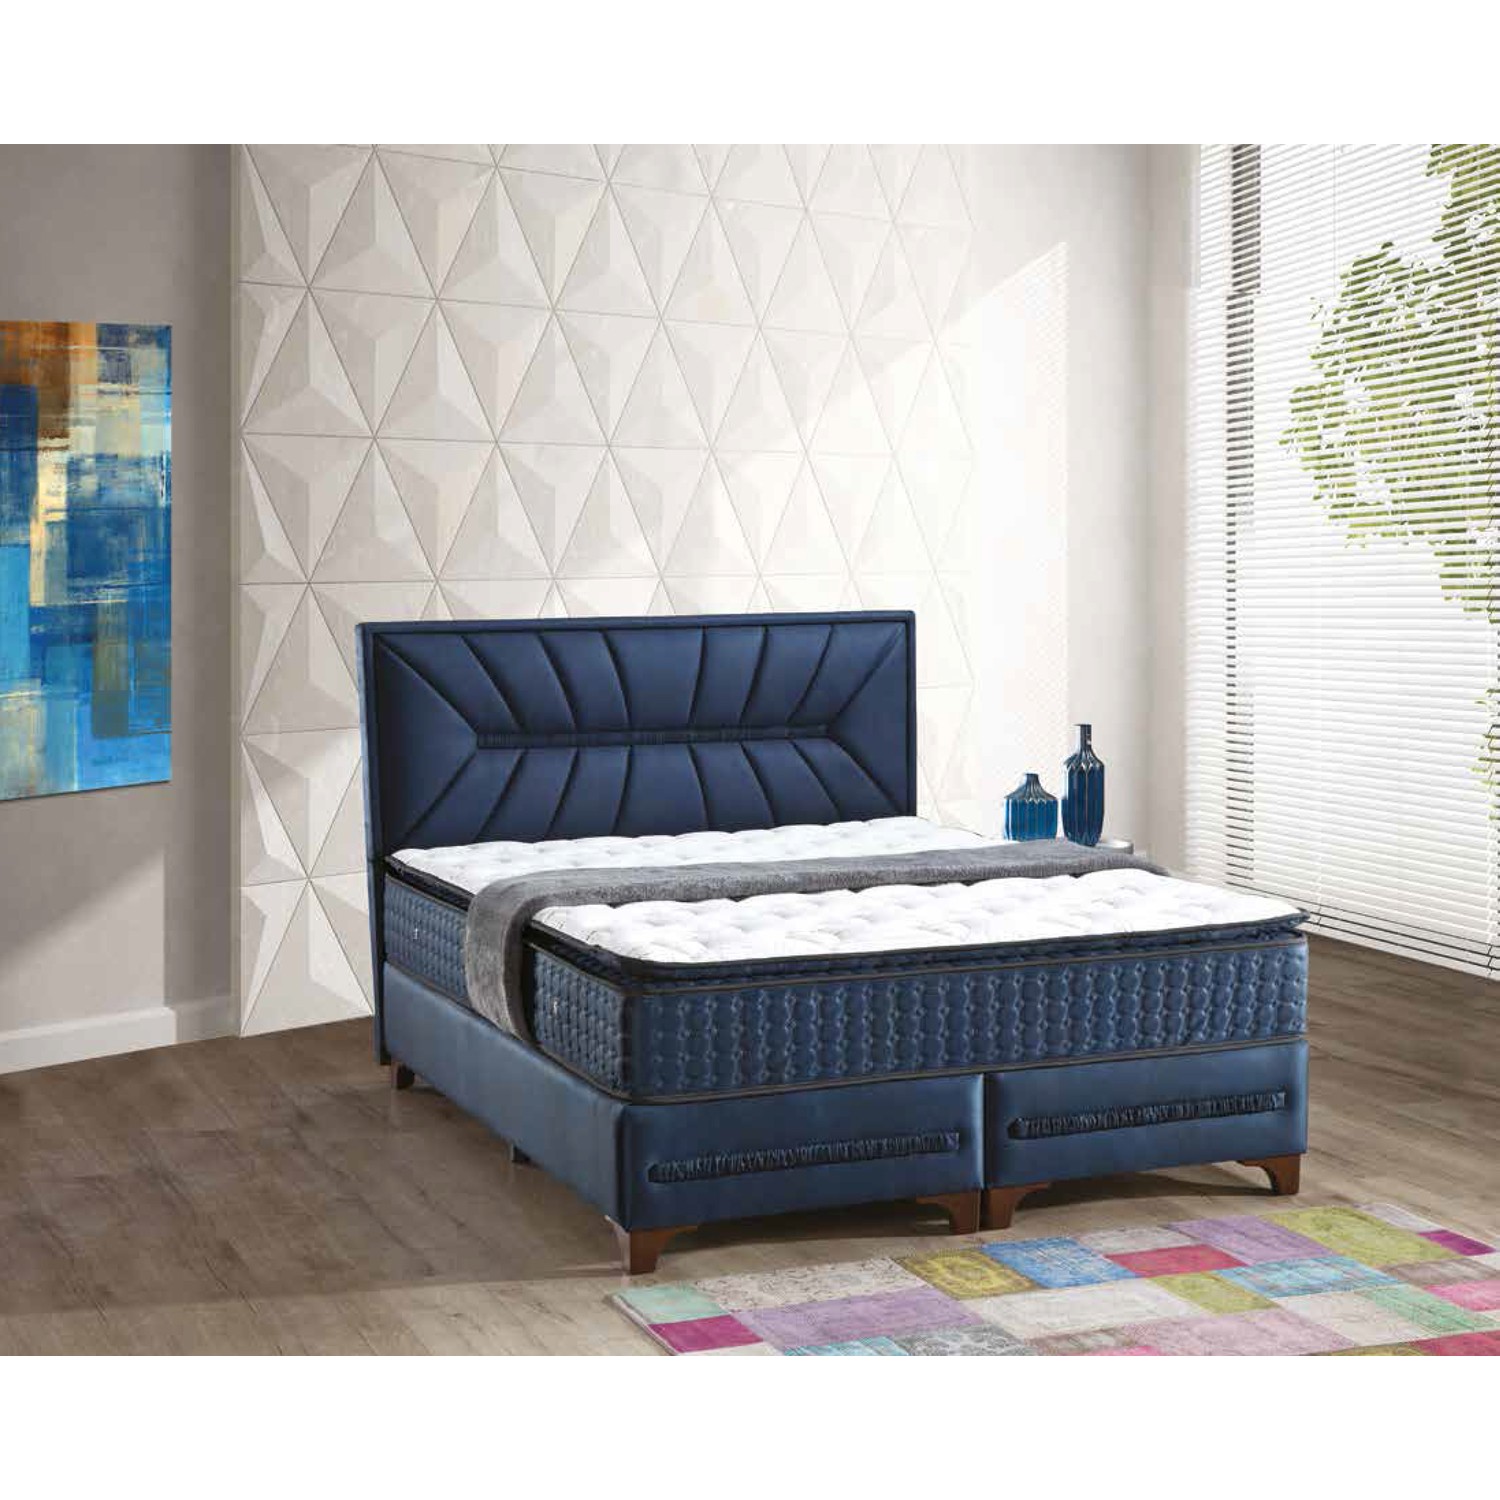 Sleep Comfort Premium Yatak Baza Başlık Set 140x190 Fiyatı